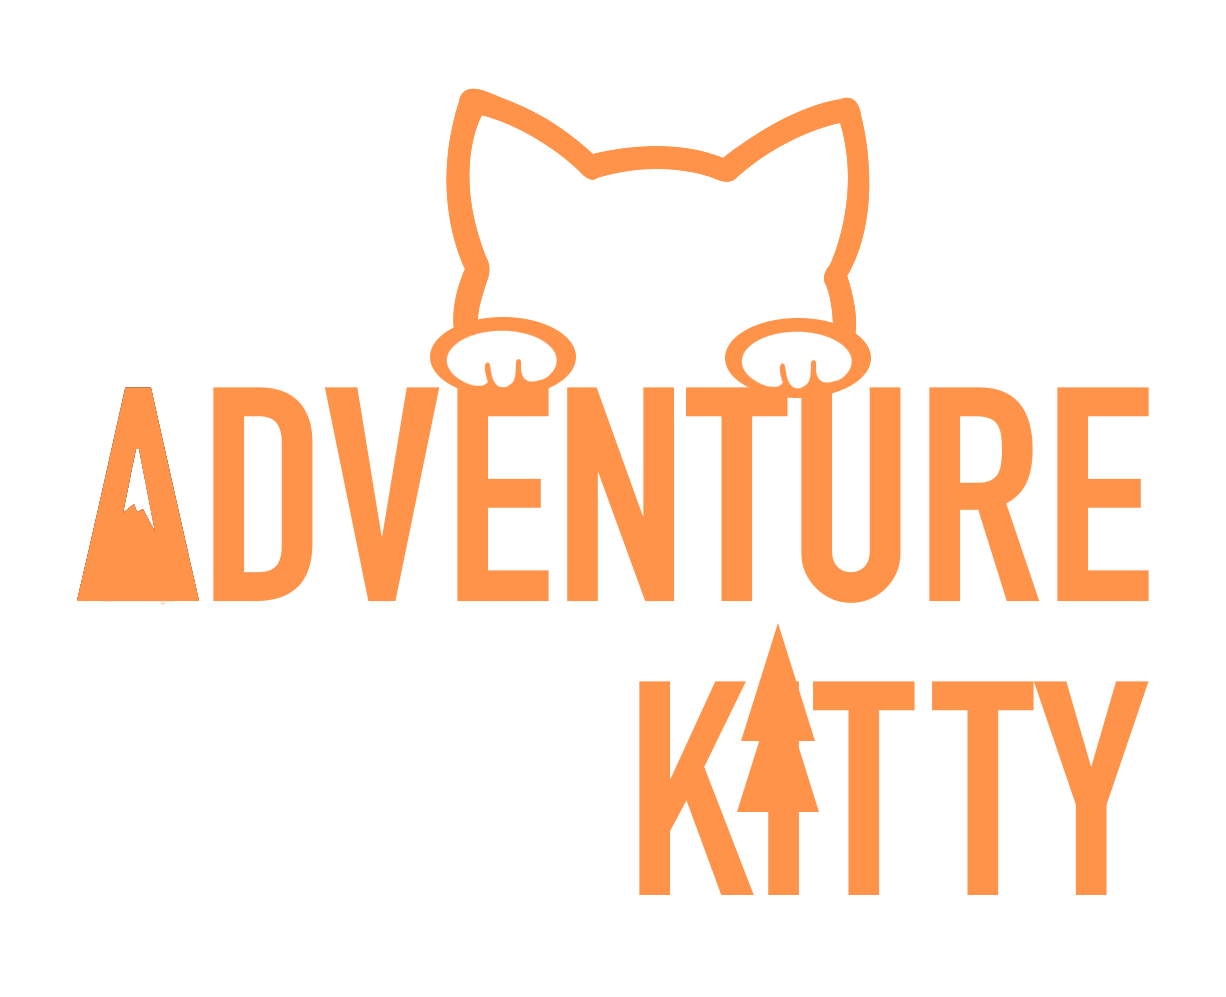 Adventure Kitty